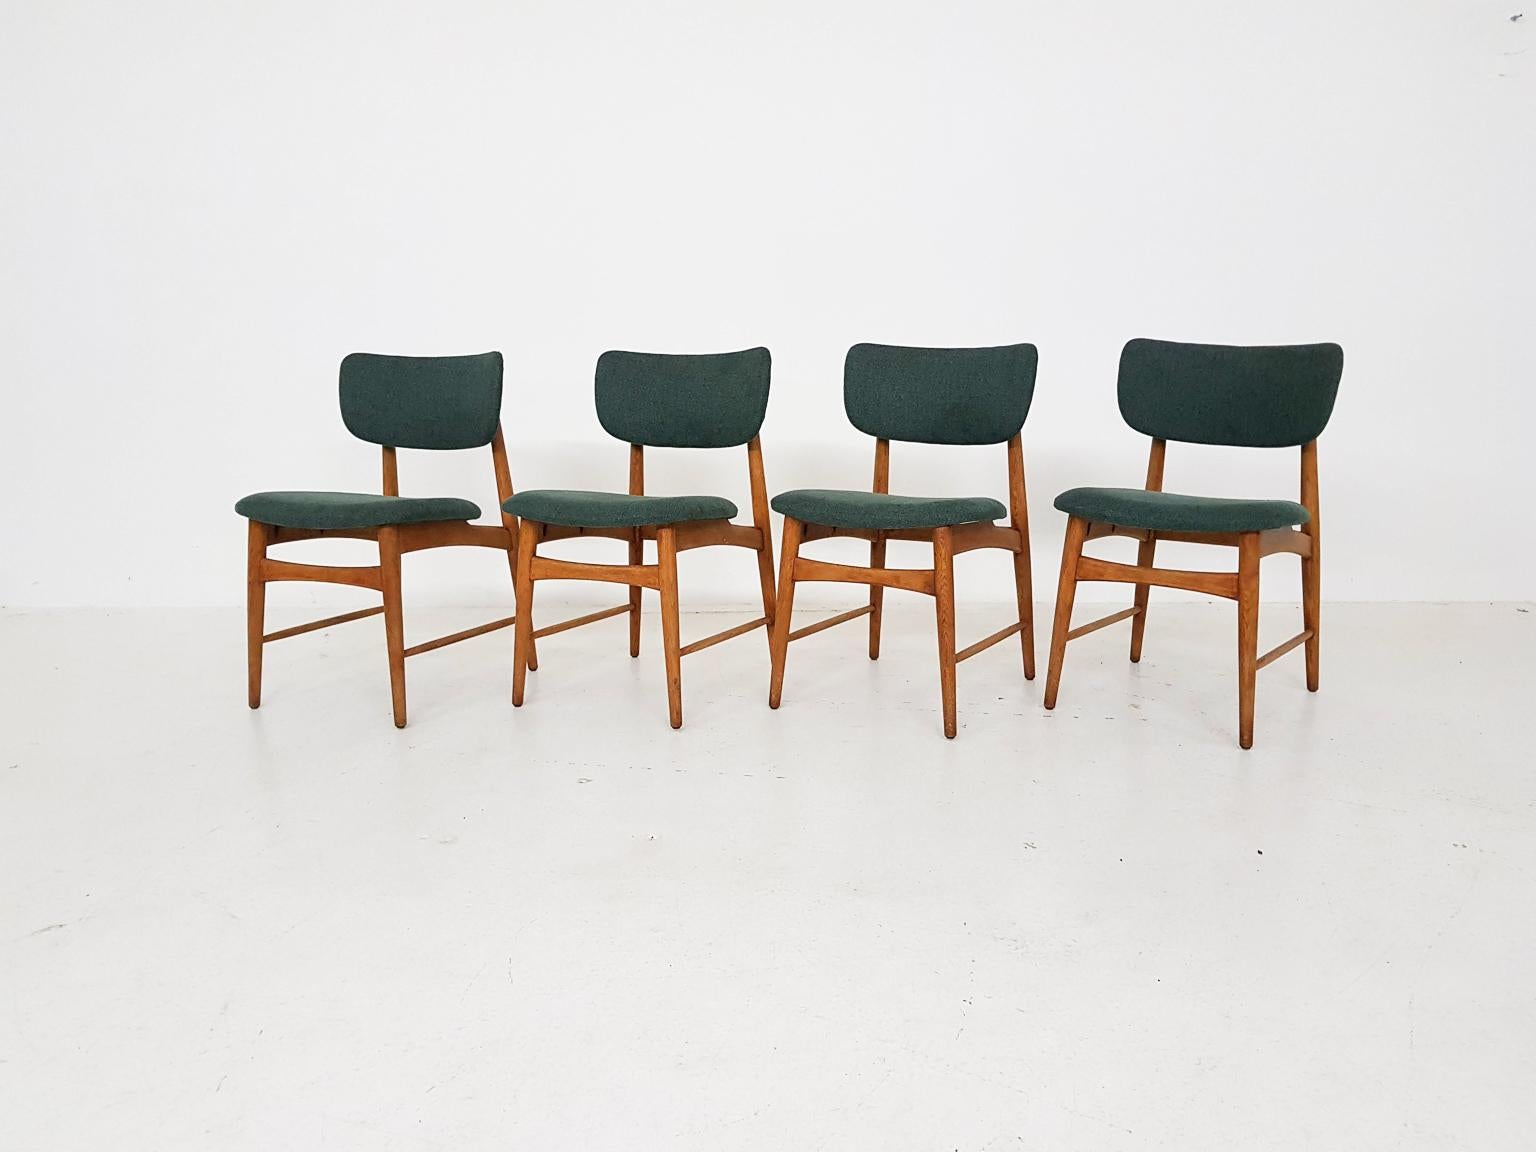 Un bel ensemble de chaises de salle à manger en chêne avec une nouvelle tapisserie verte. 

Nous pensons qu'il s'agit d'une création du fabricant néerlandais de meubles du milieu du siècle Bovenkamp, car le cadre en chêne et la forme de l'assise